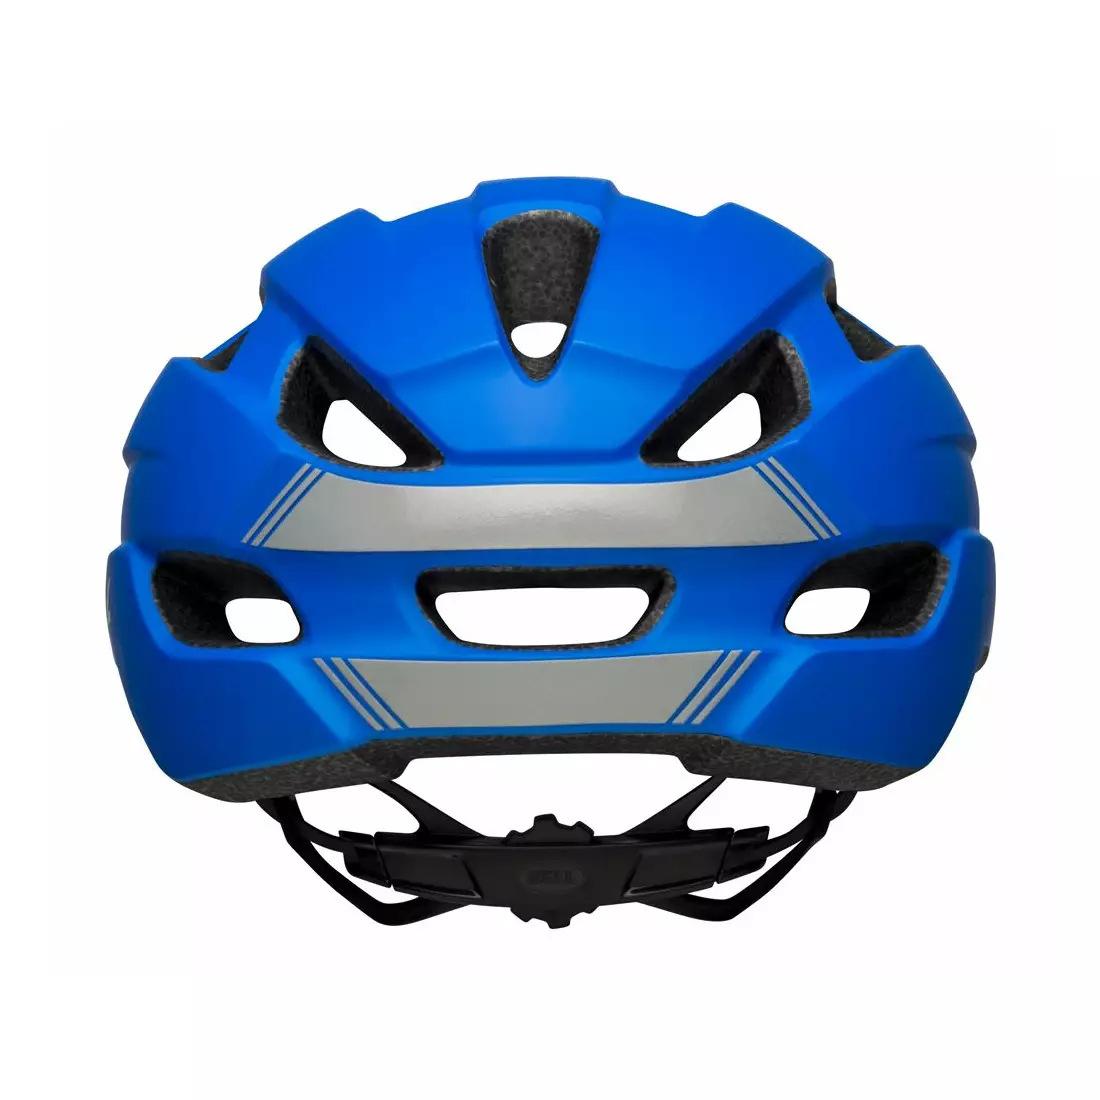 BELL TRACE kask rowerowy MTB, matte blue